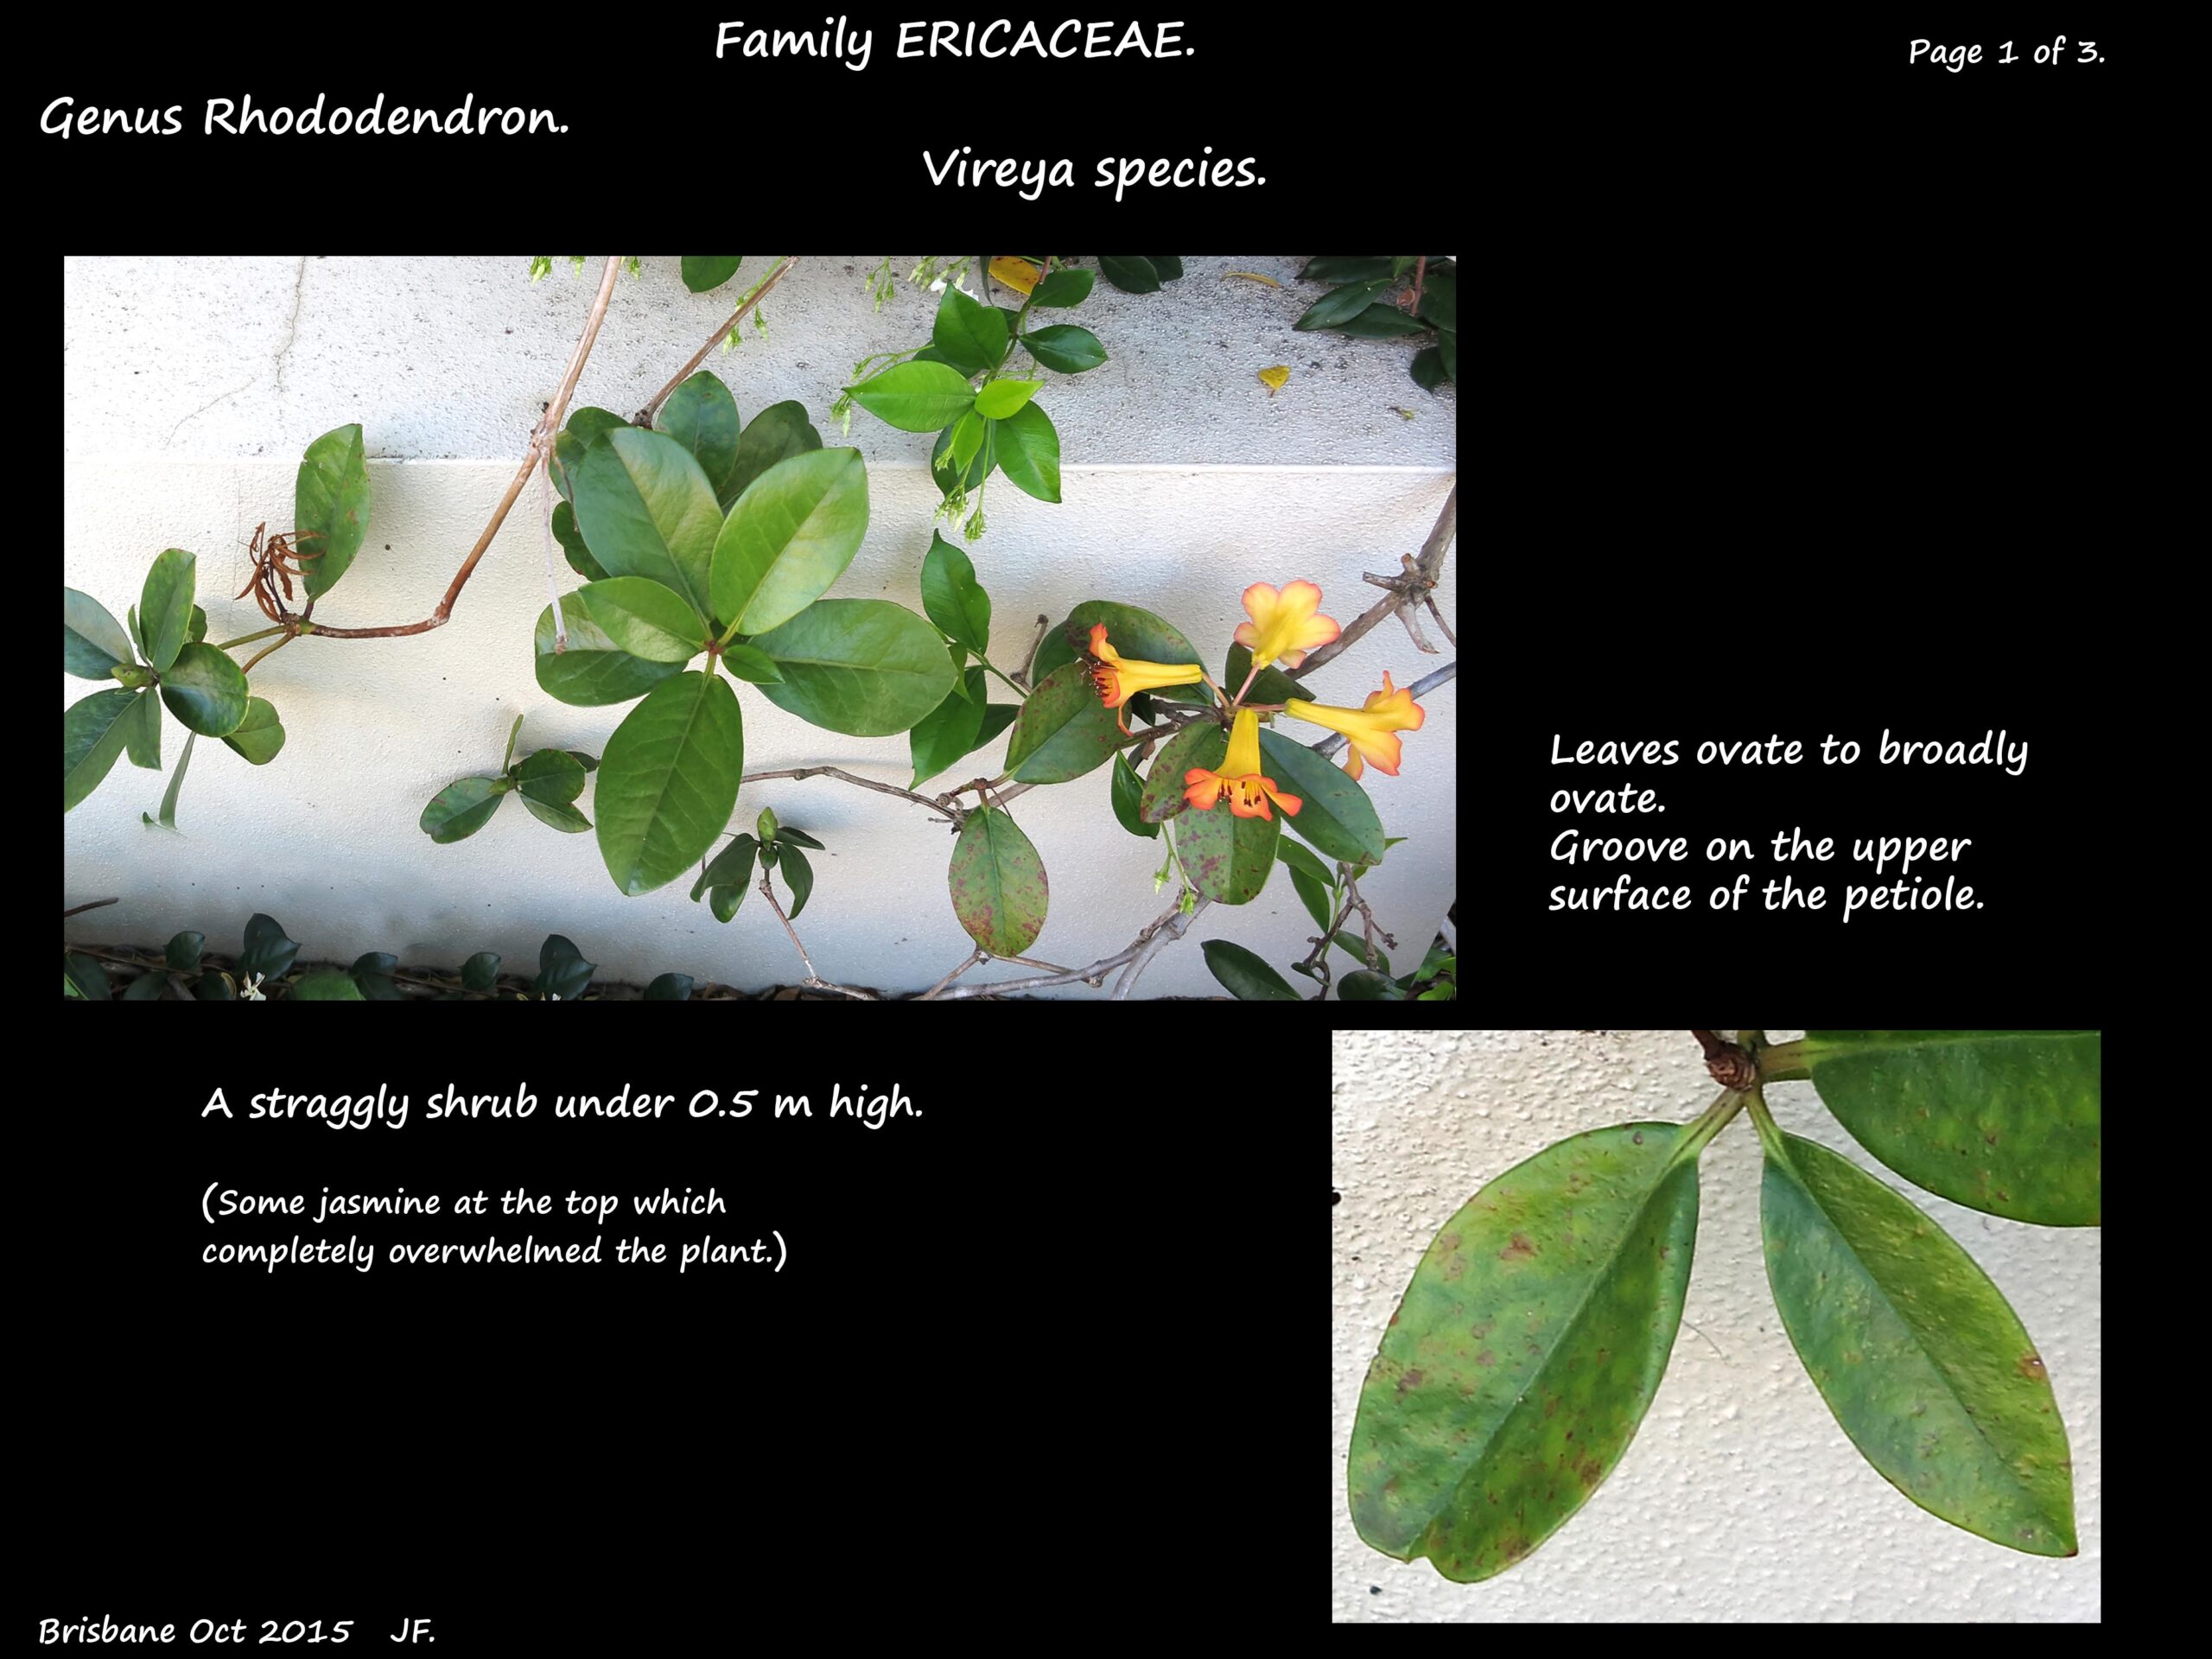 1 An Orange Vireya shrub & leaves